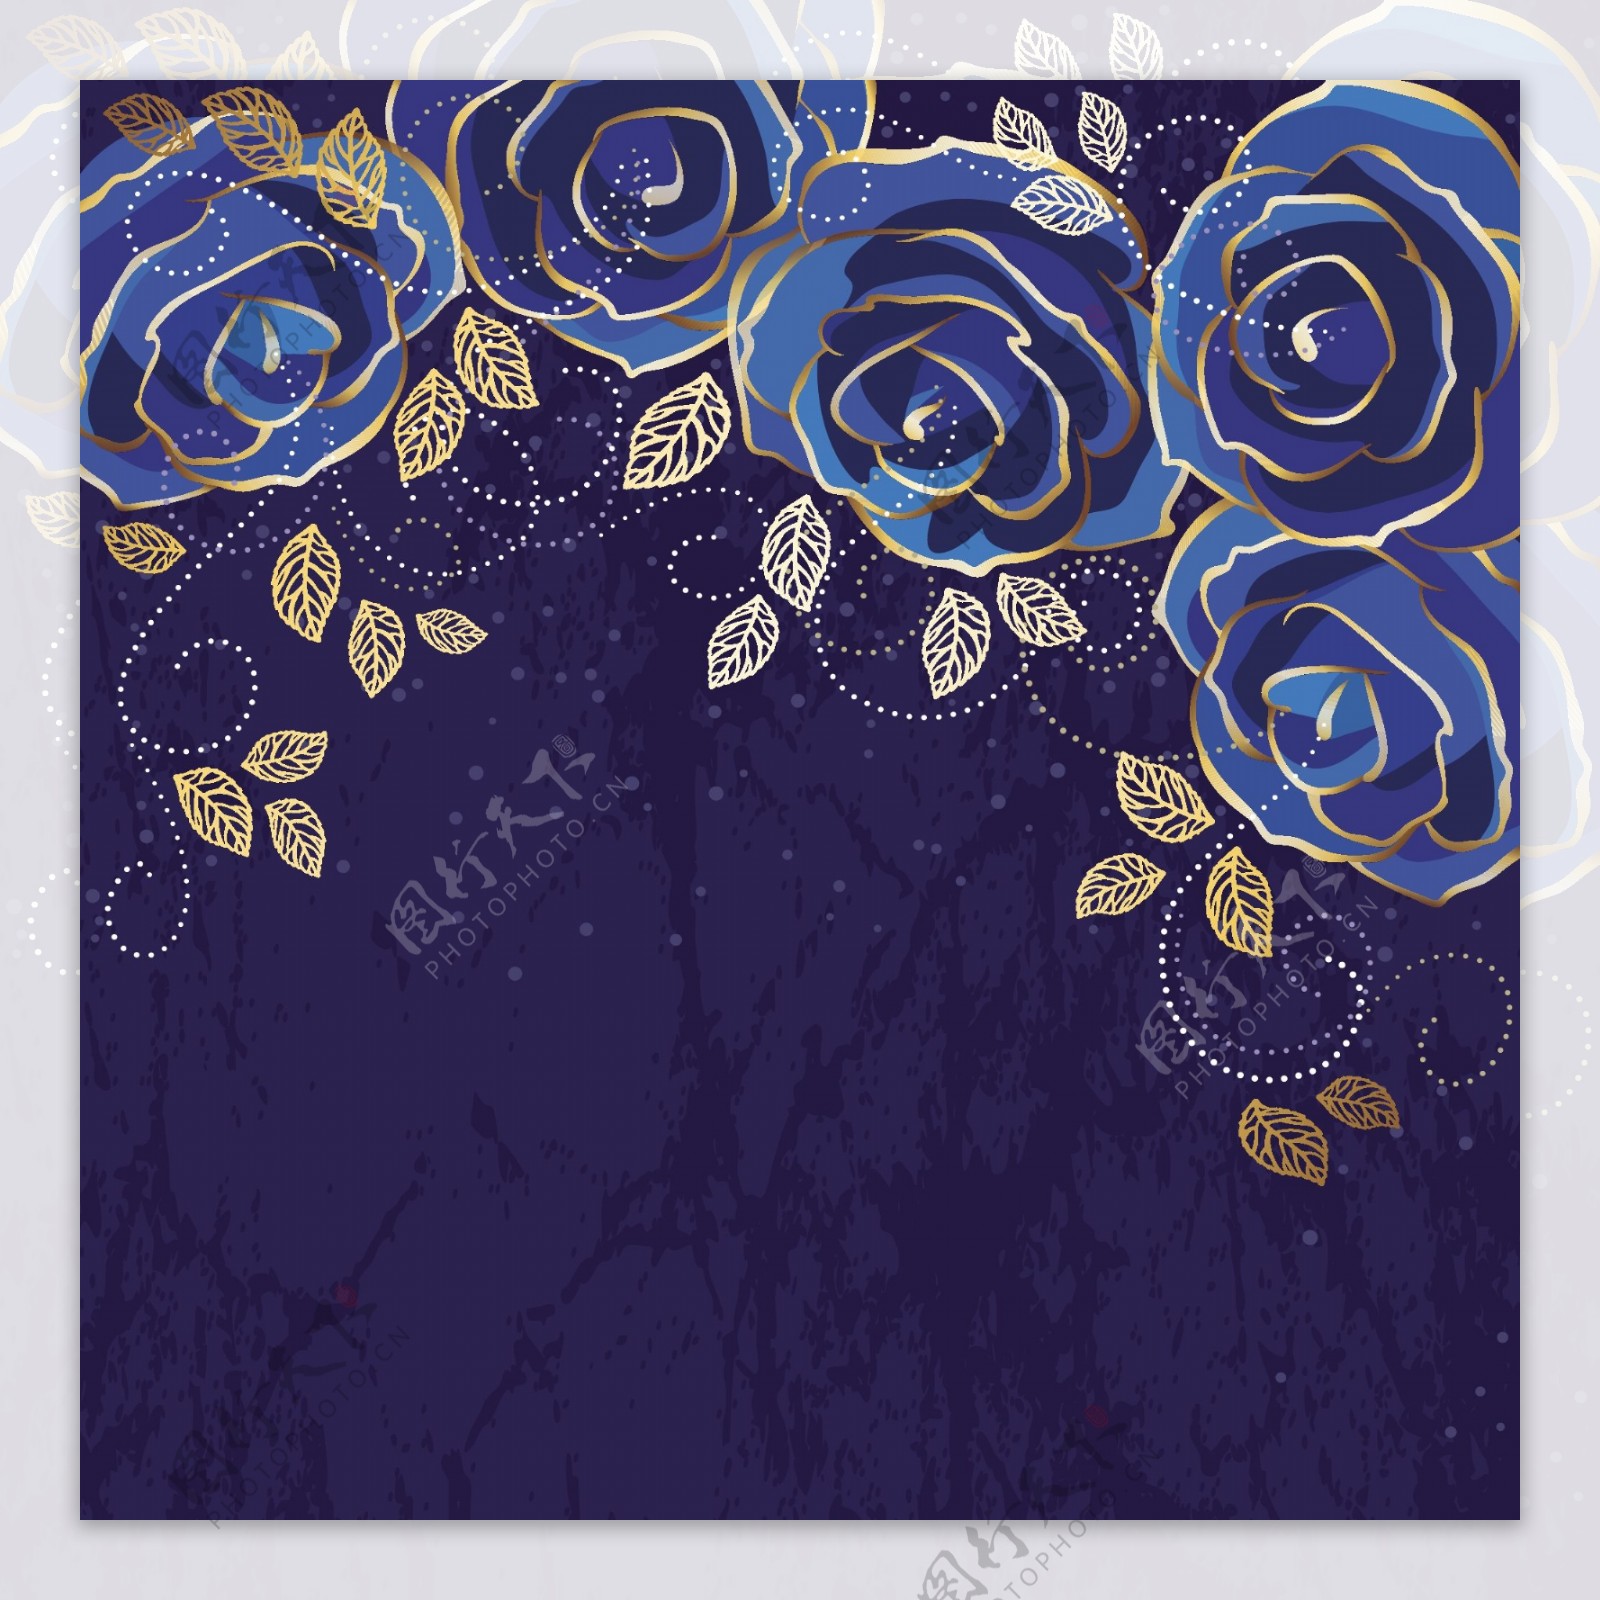 美丽的蓝色玫瑰葡萄酒背景矢量01